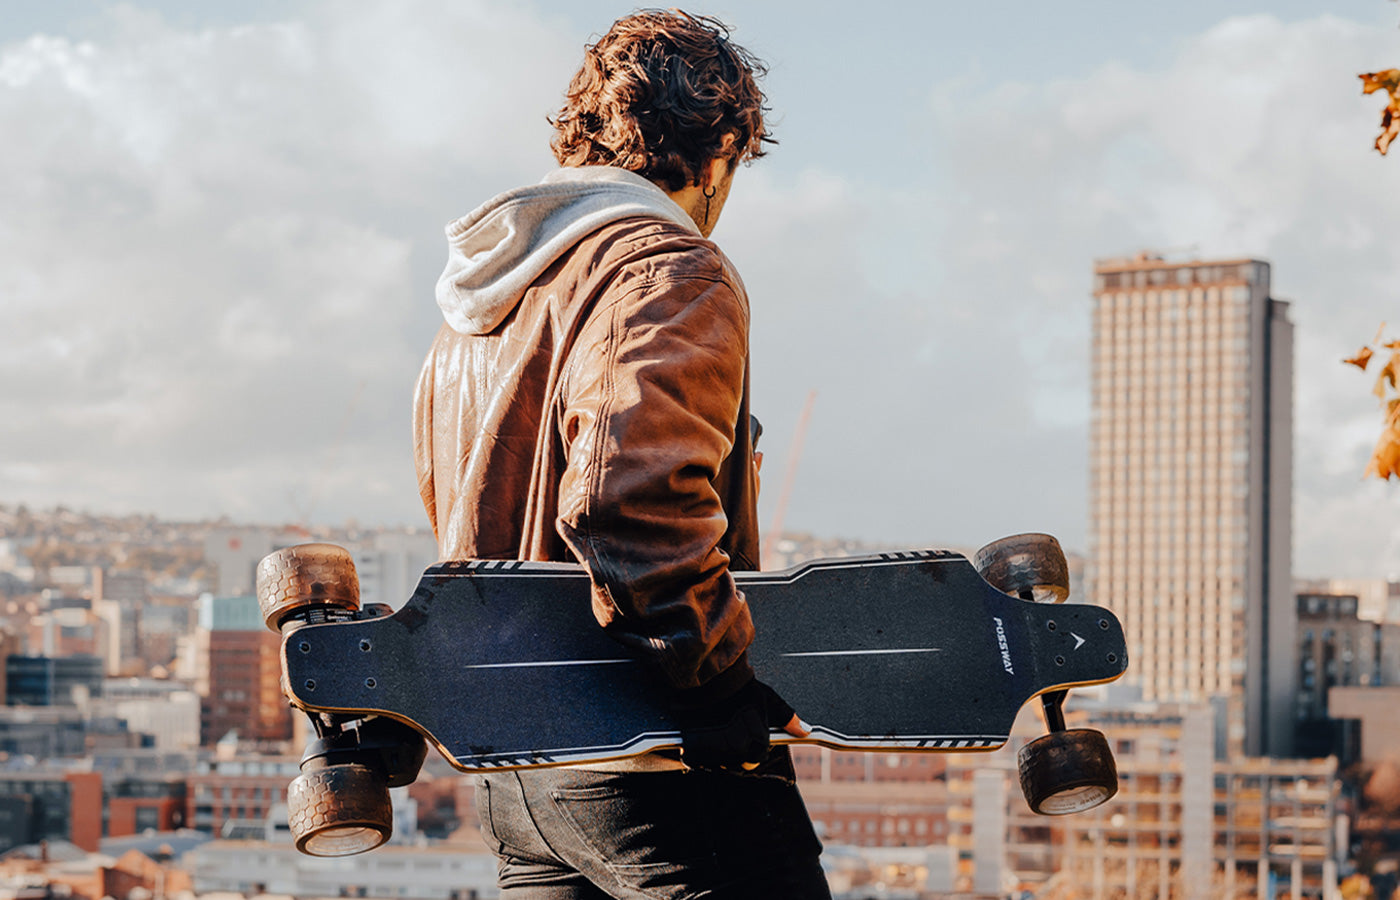 Why choose a Belt Drive Electric Skateboard